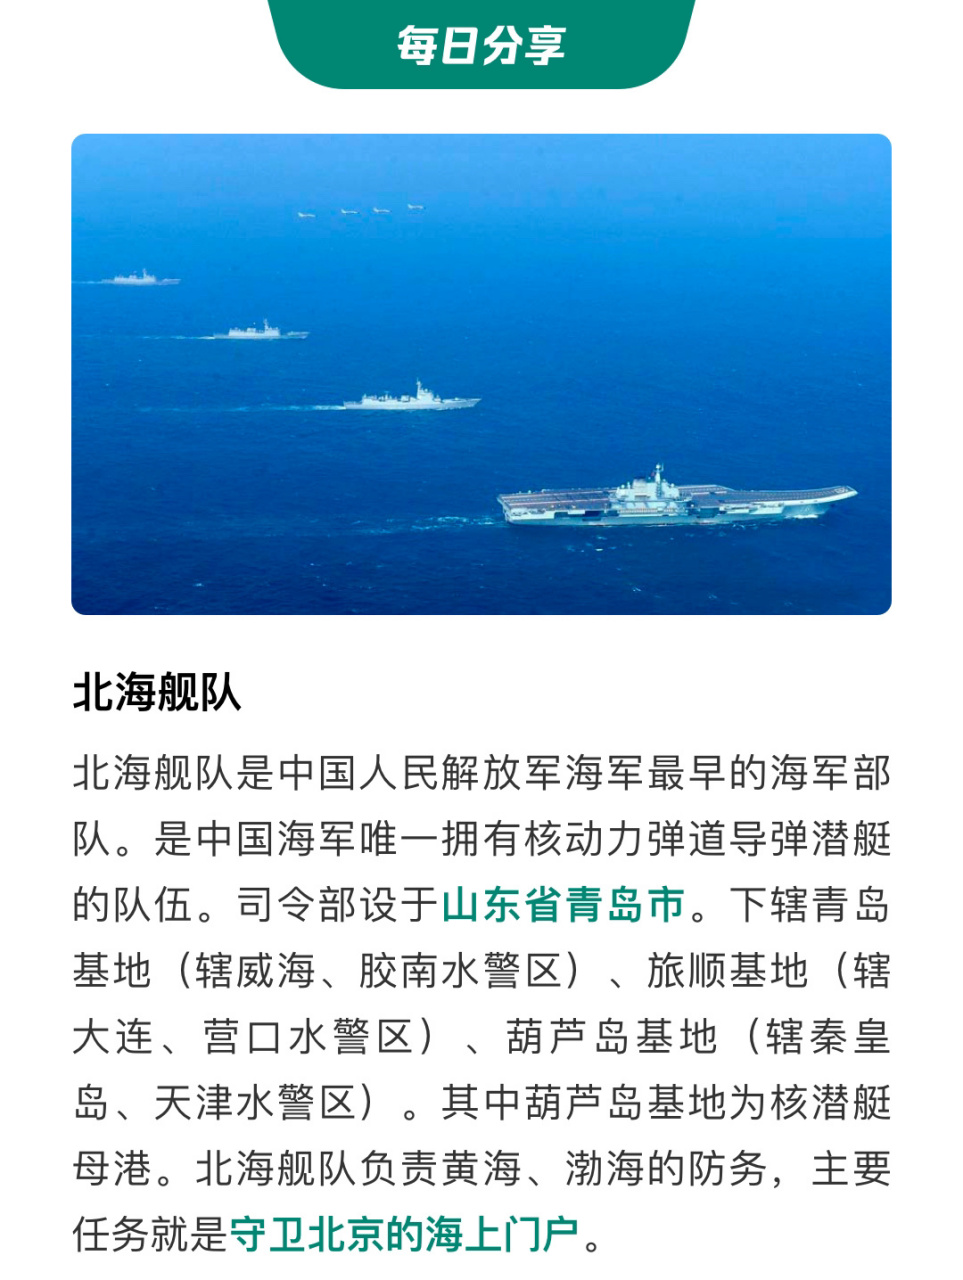 中国海军三大舰队!